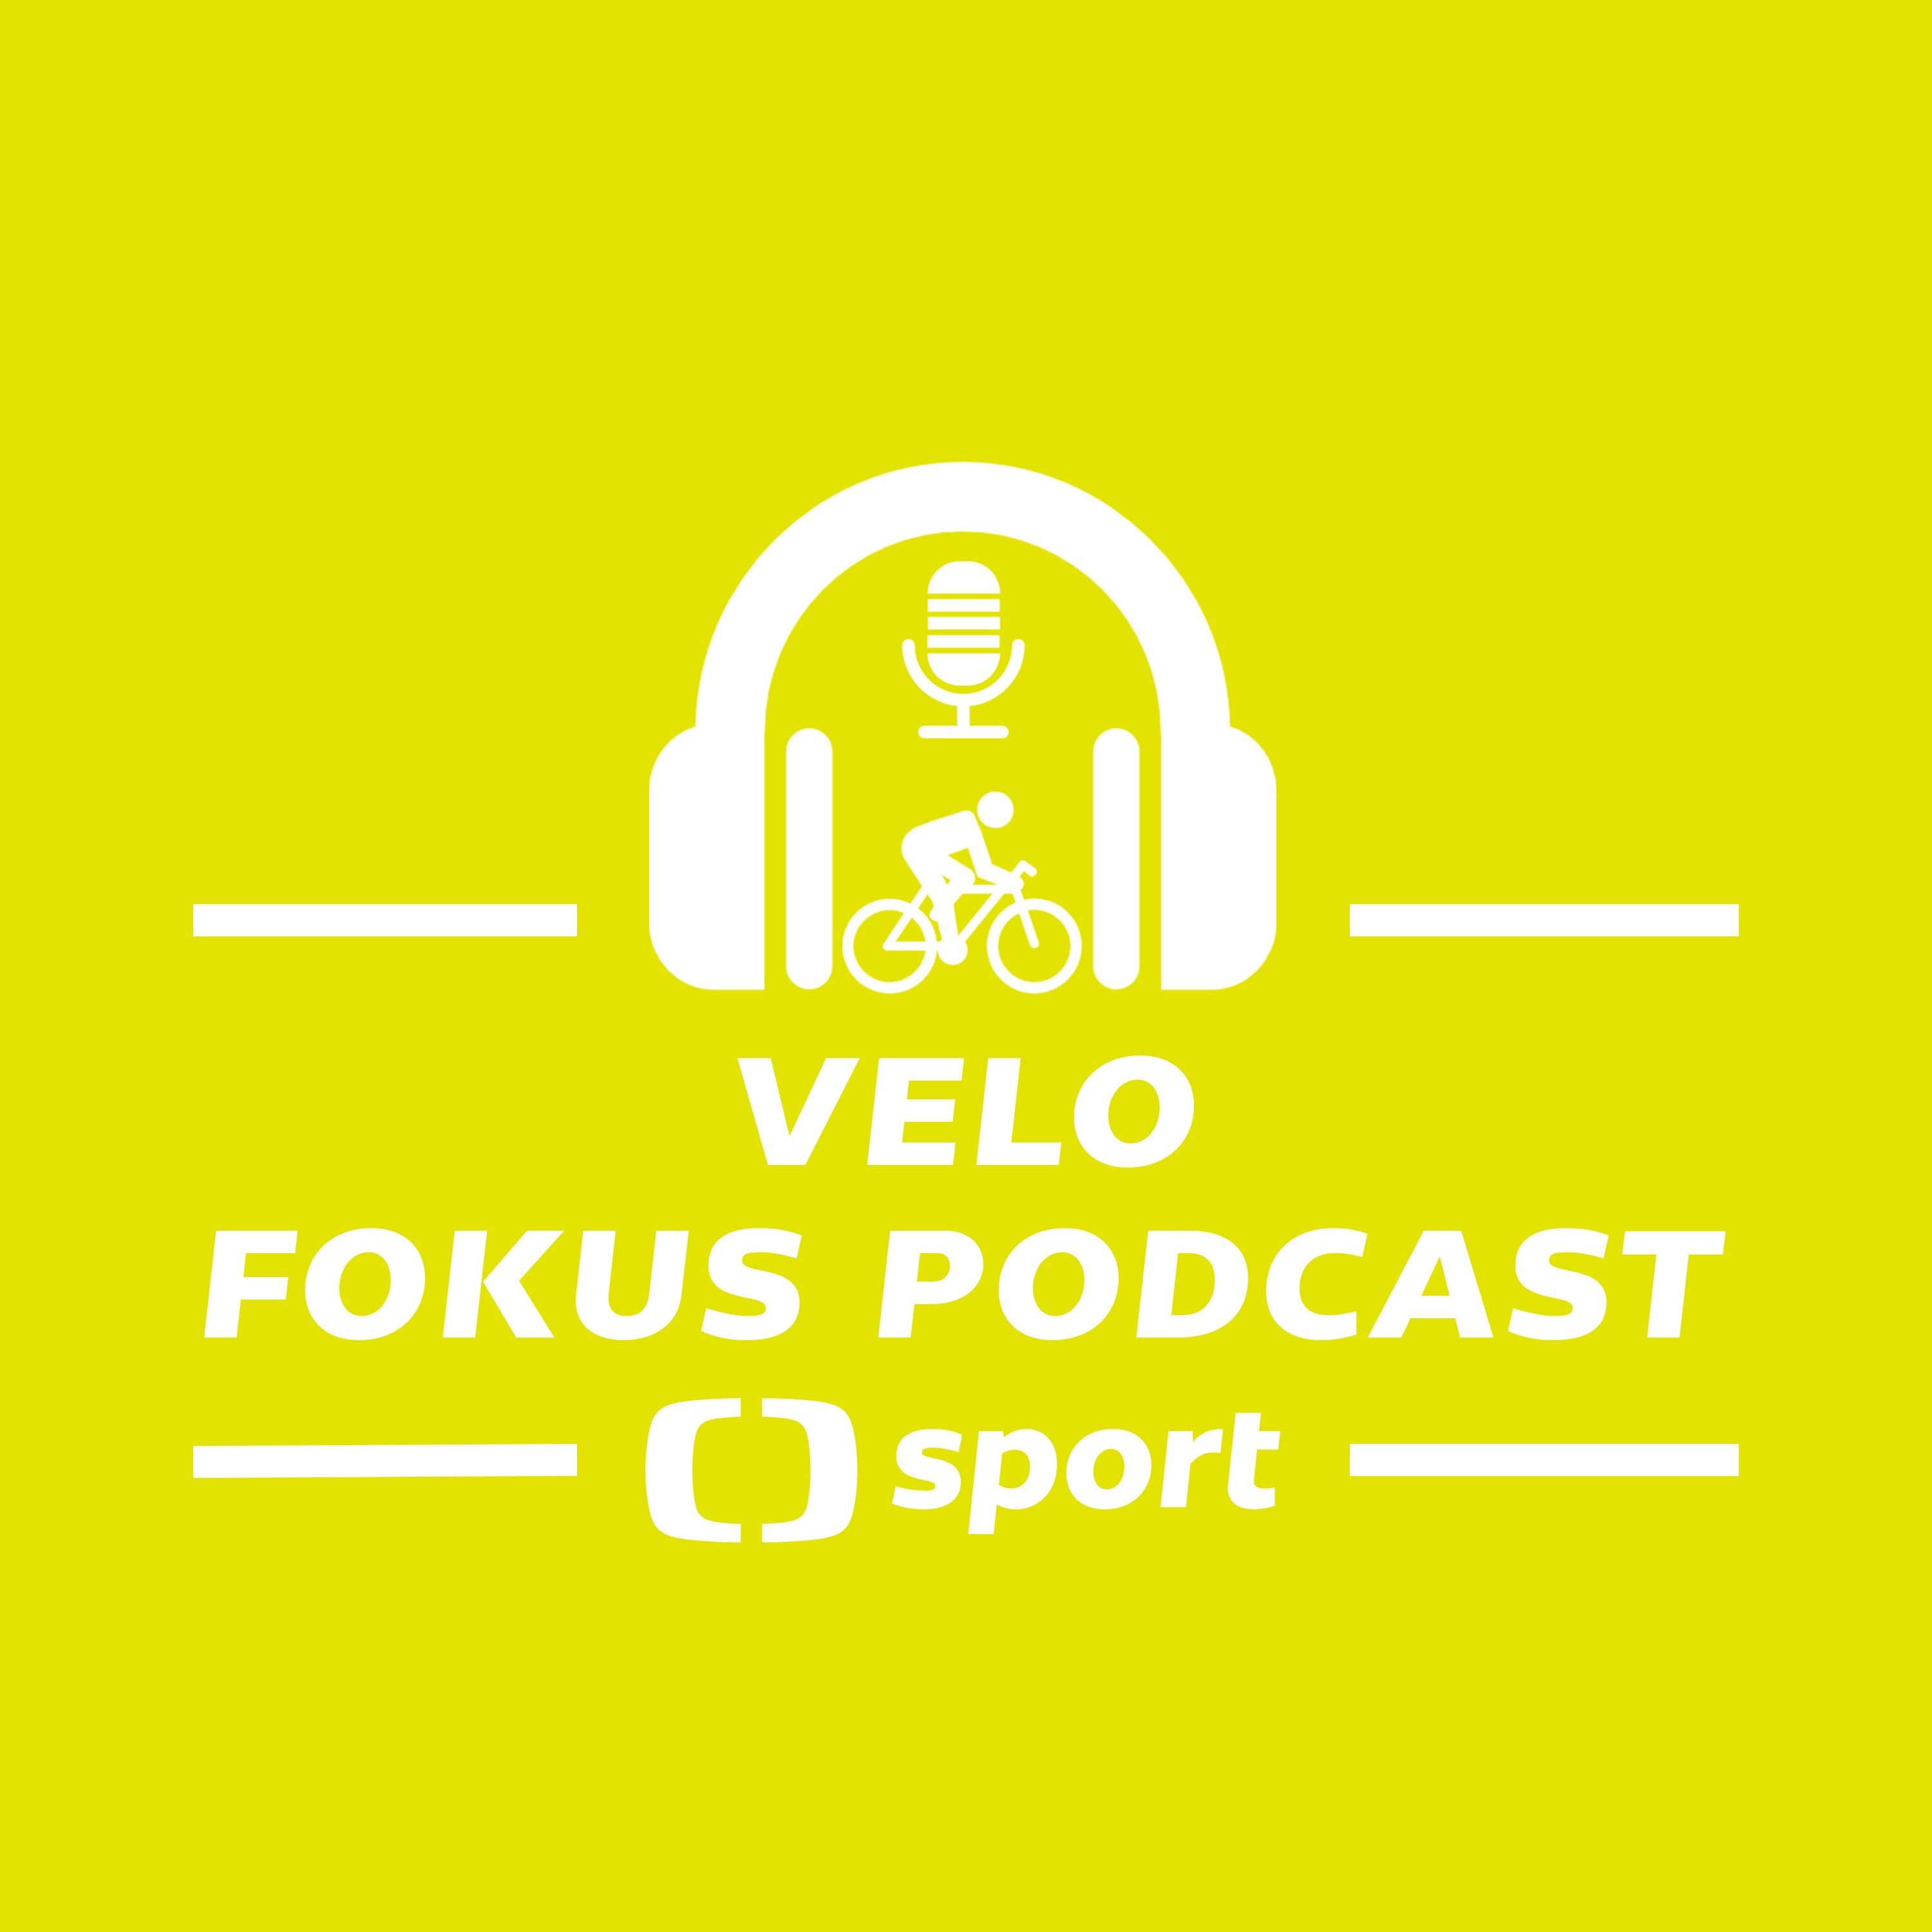 Velo fokus podcast: Před cyklokrosovým MS v Táboře